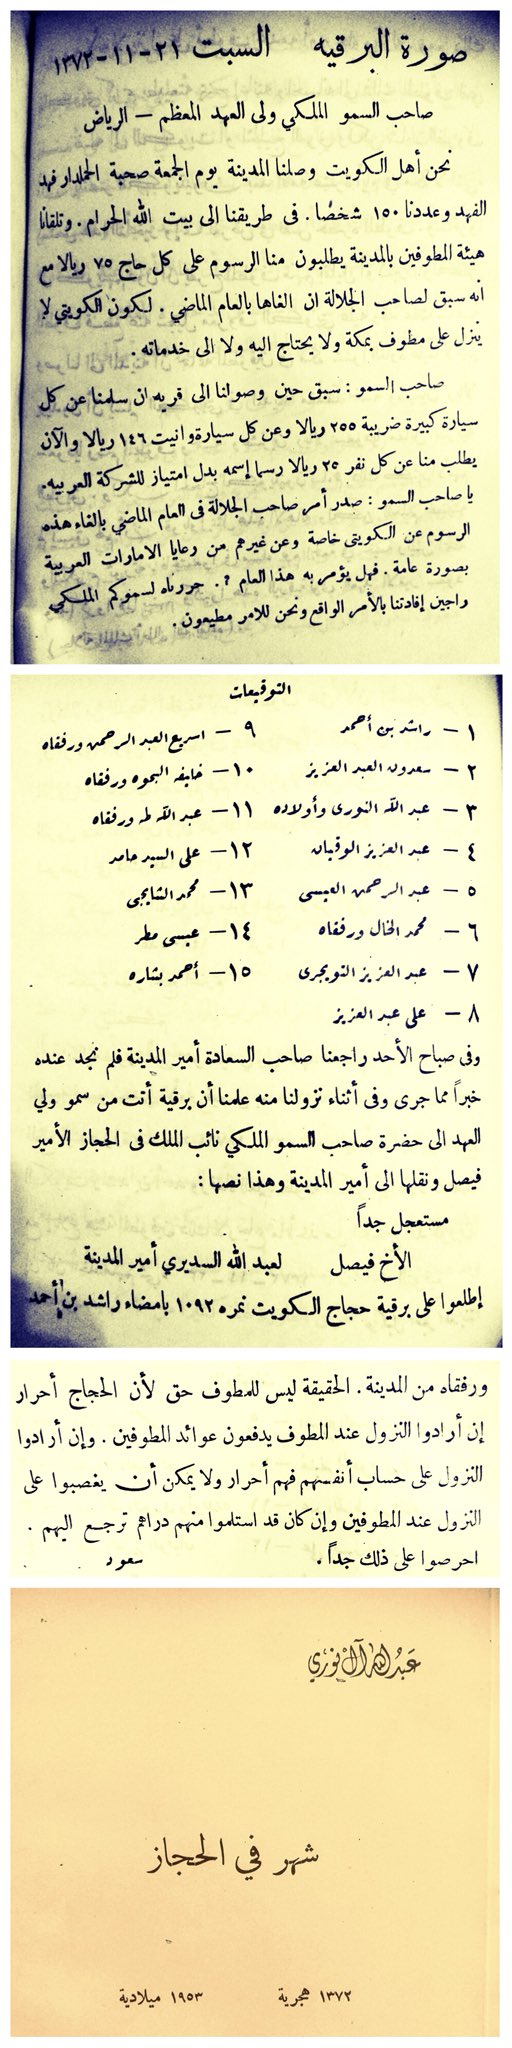 في حج عام ١٣٧٢هـ ١٩٥٣م ‏طلب المطوفون في السعودية ‏ من الحجاج الكويتيين رسوم قدرها 75 ريال.jpg